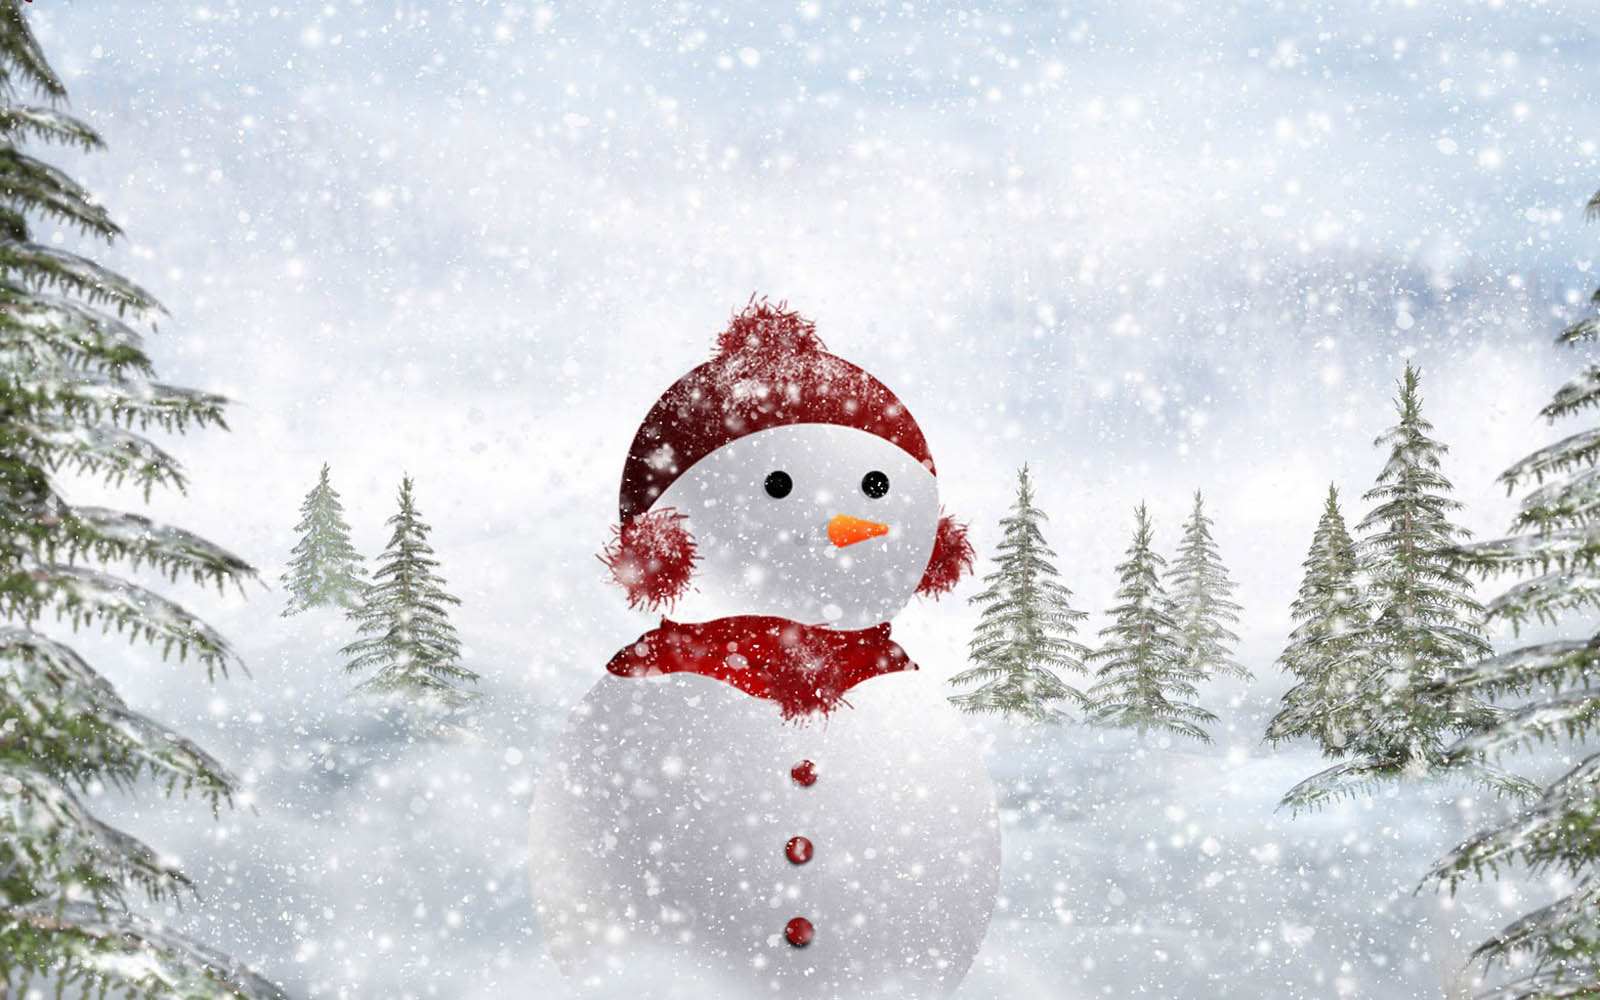 Wallpaper Snowman Backgrounds